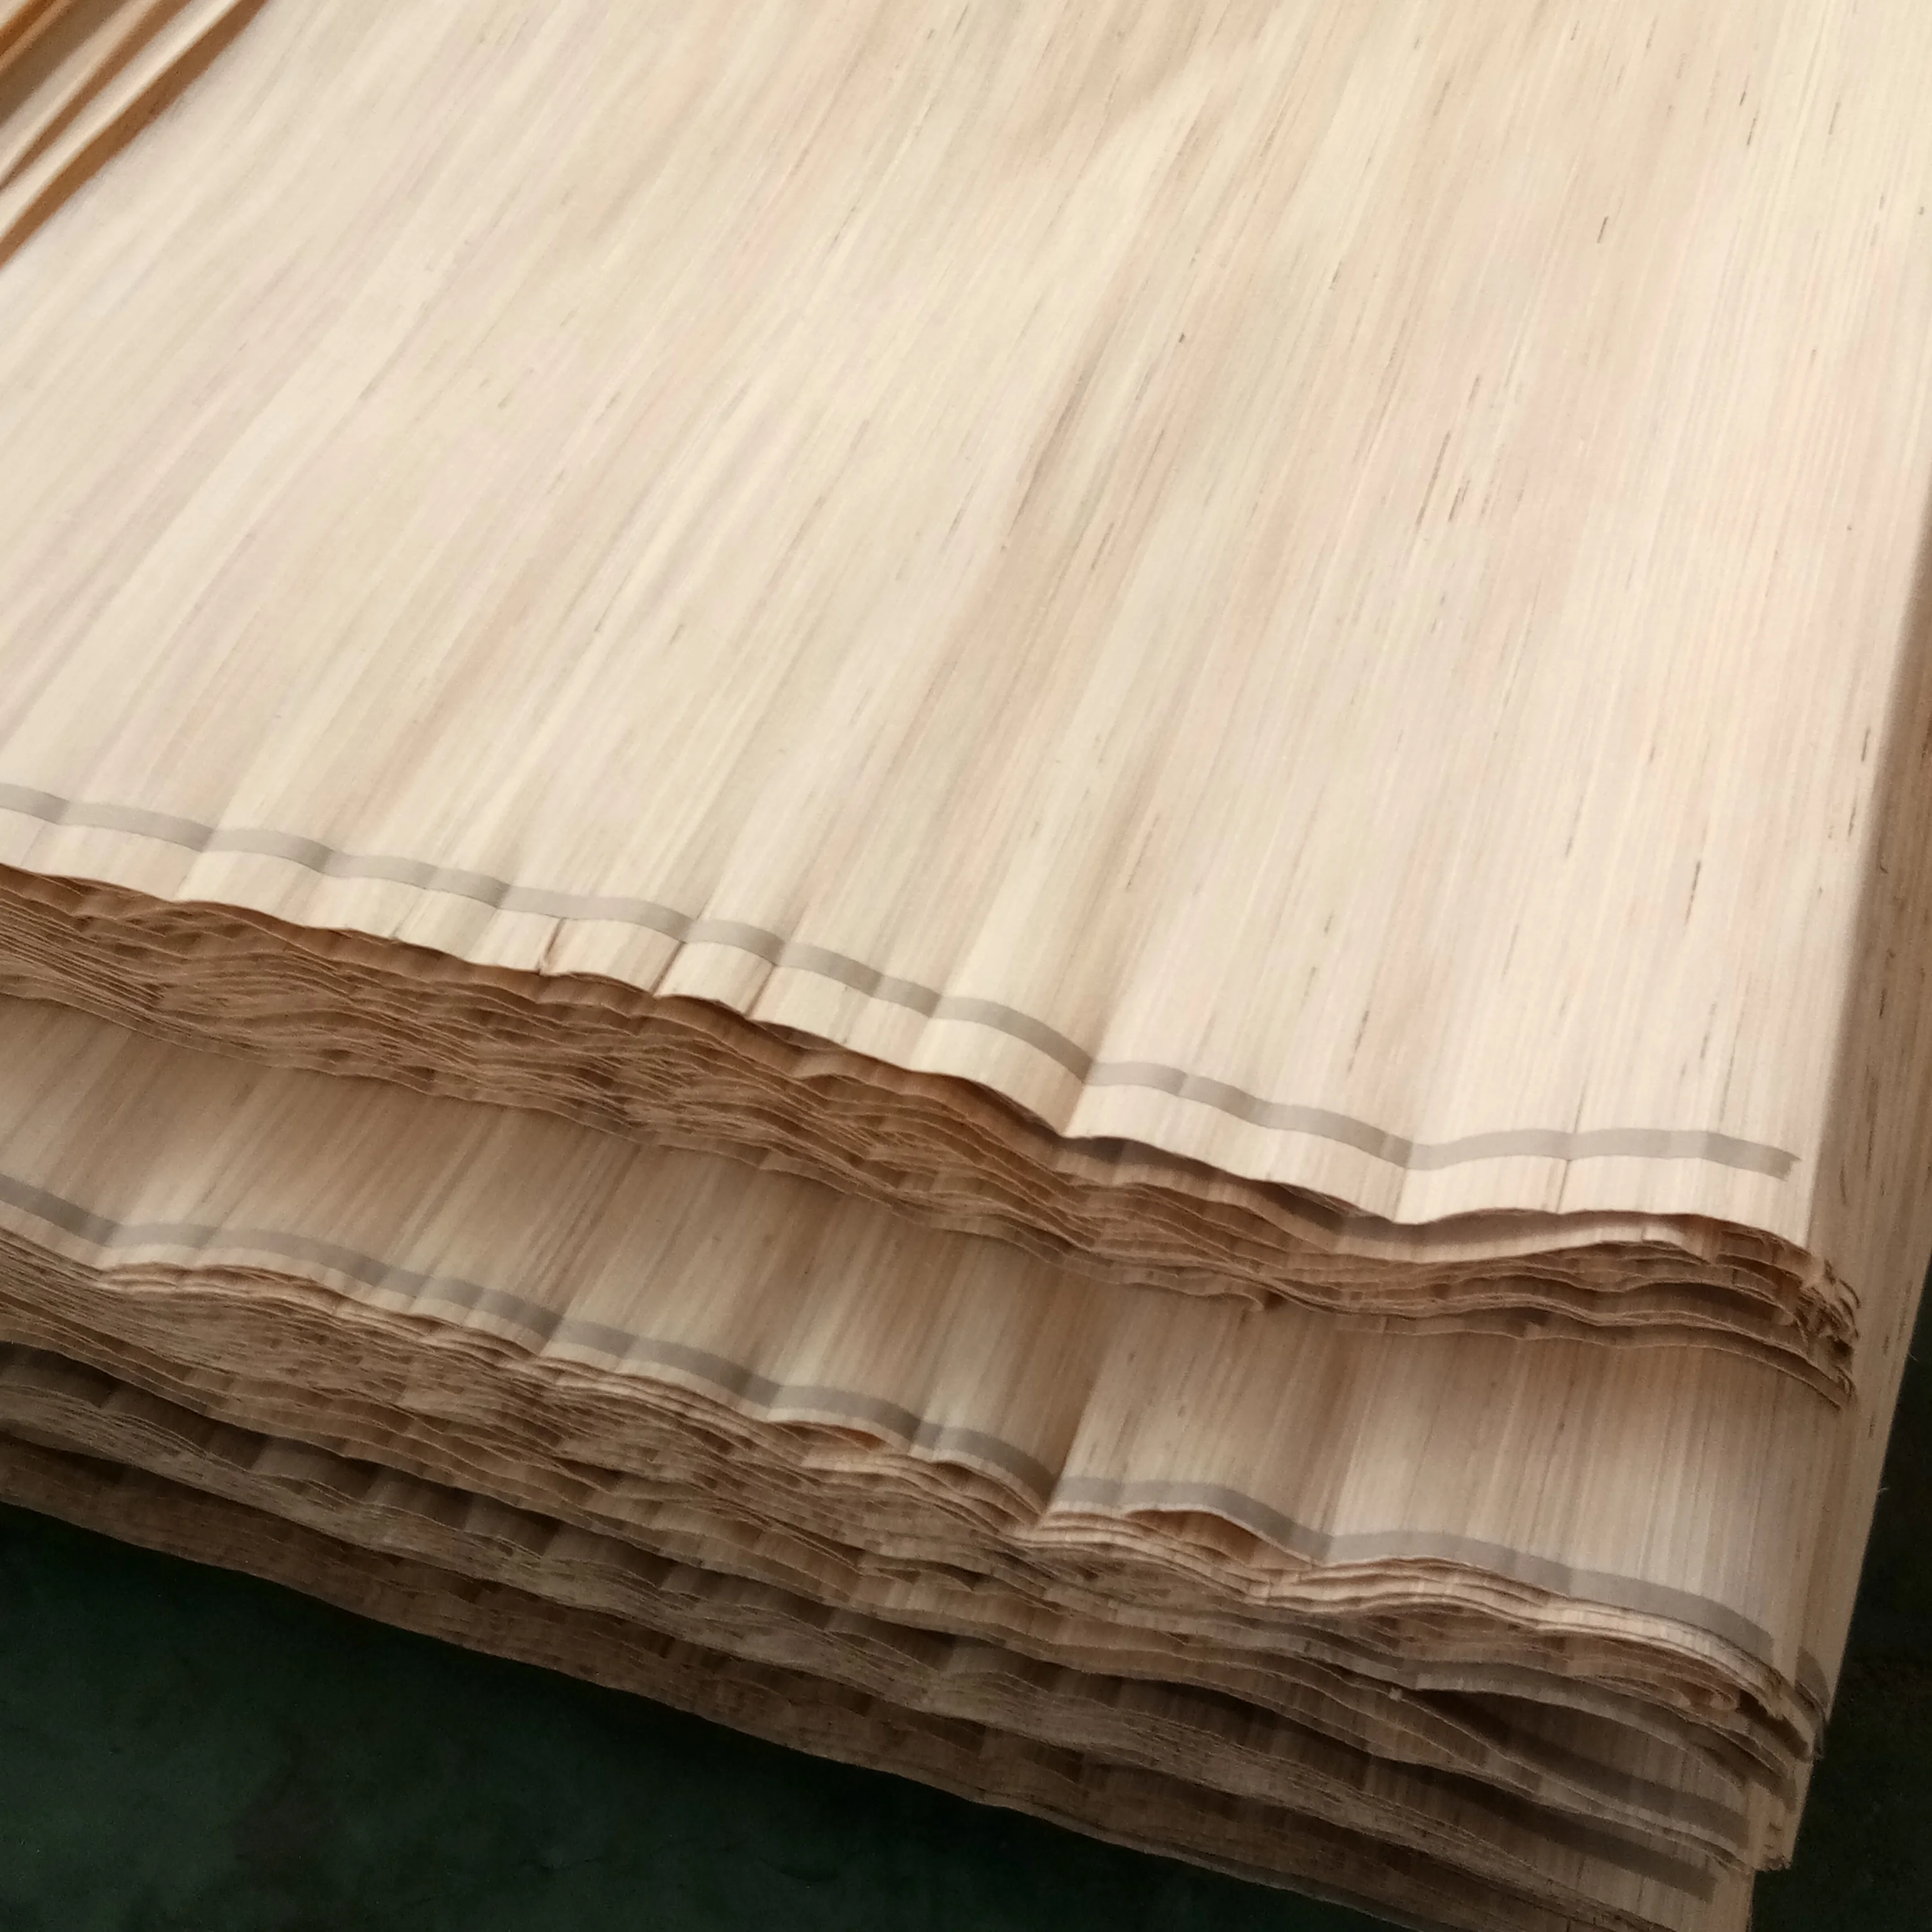 Solid Wood Oak Wood Veneer - Buy Solid Wood Veneer,Oak ...